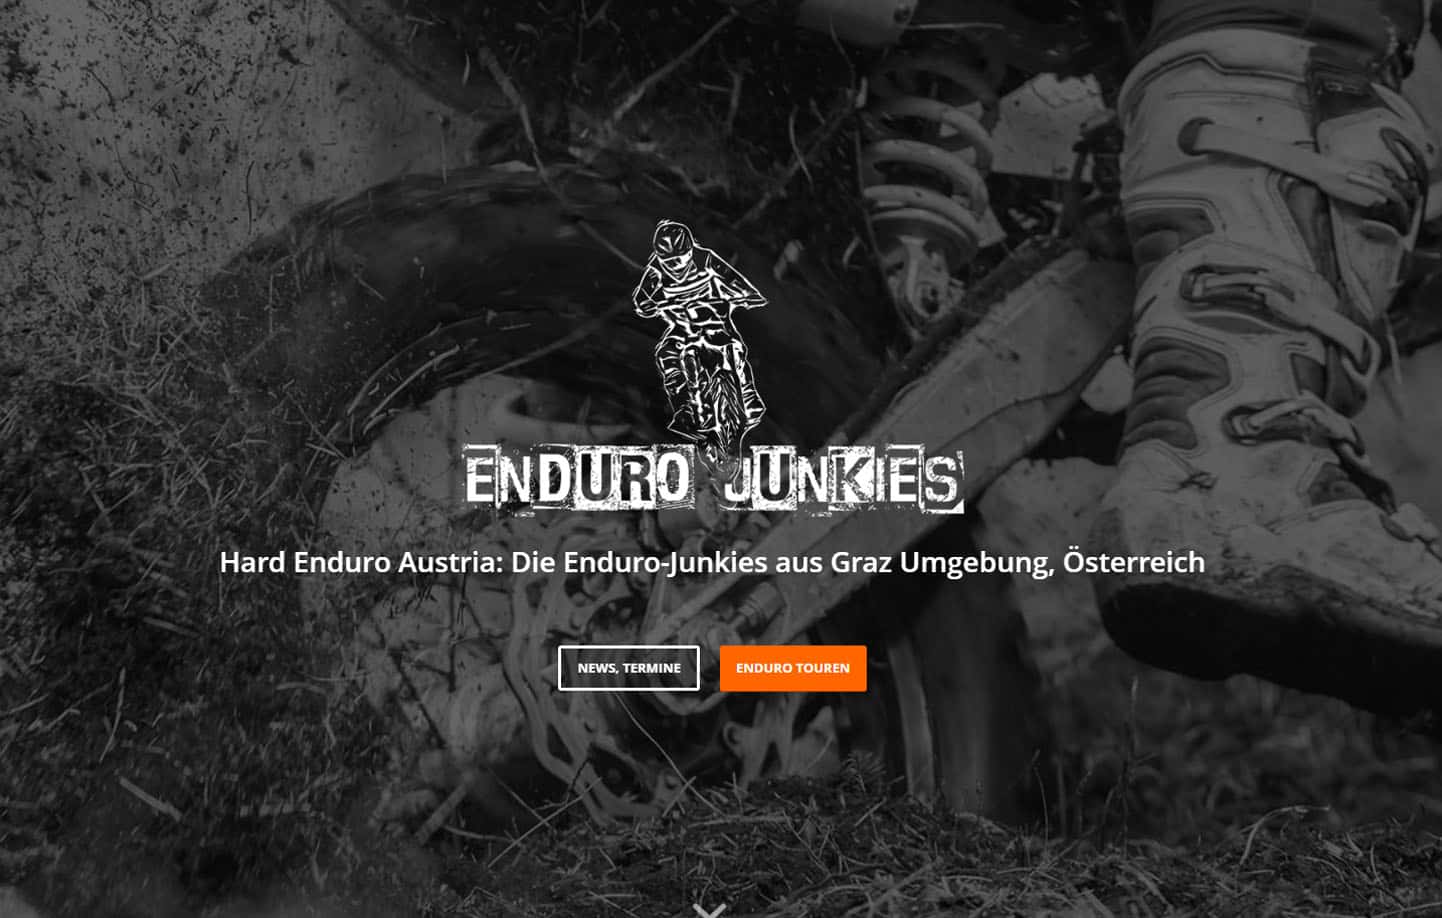 Hard Enduro Austria: Enduro Junkies und Trial Junkies Steiermark